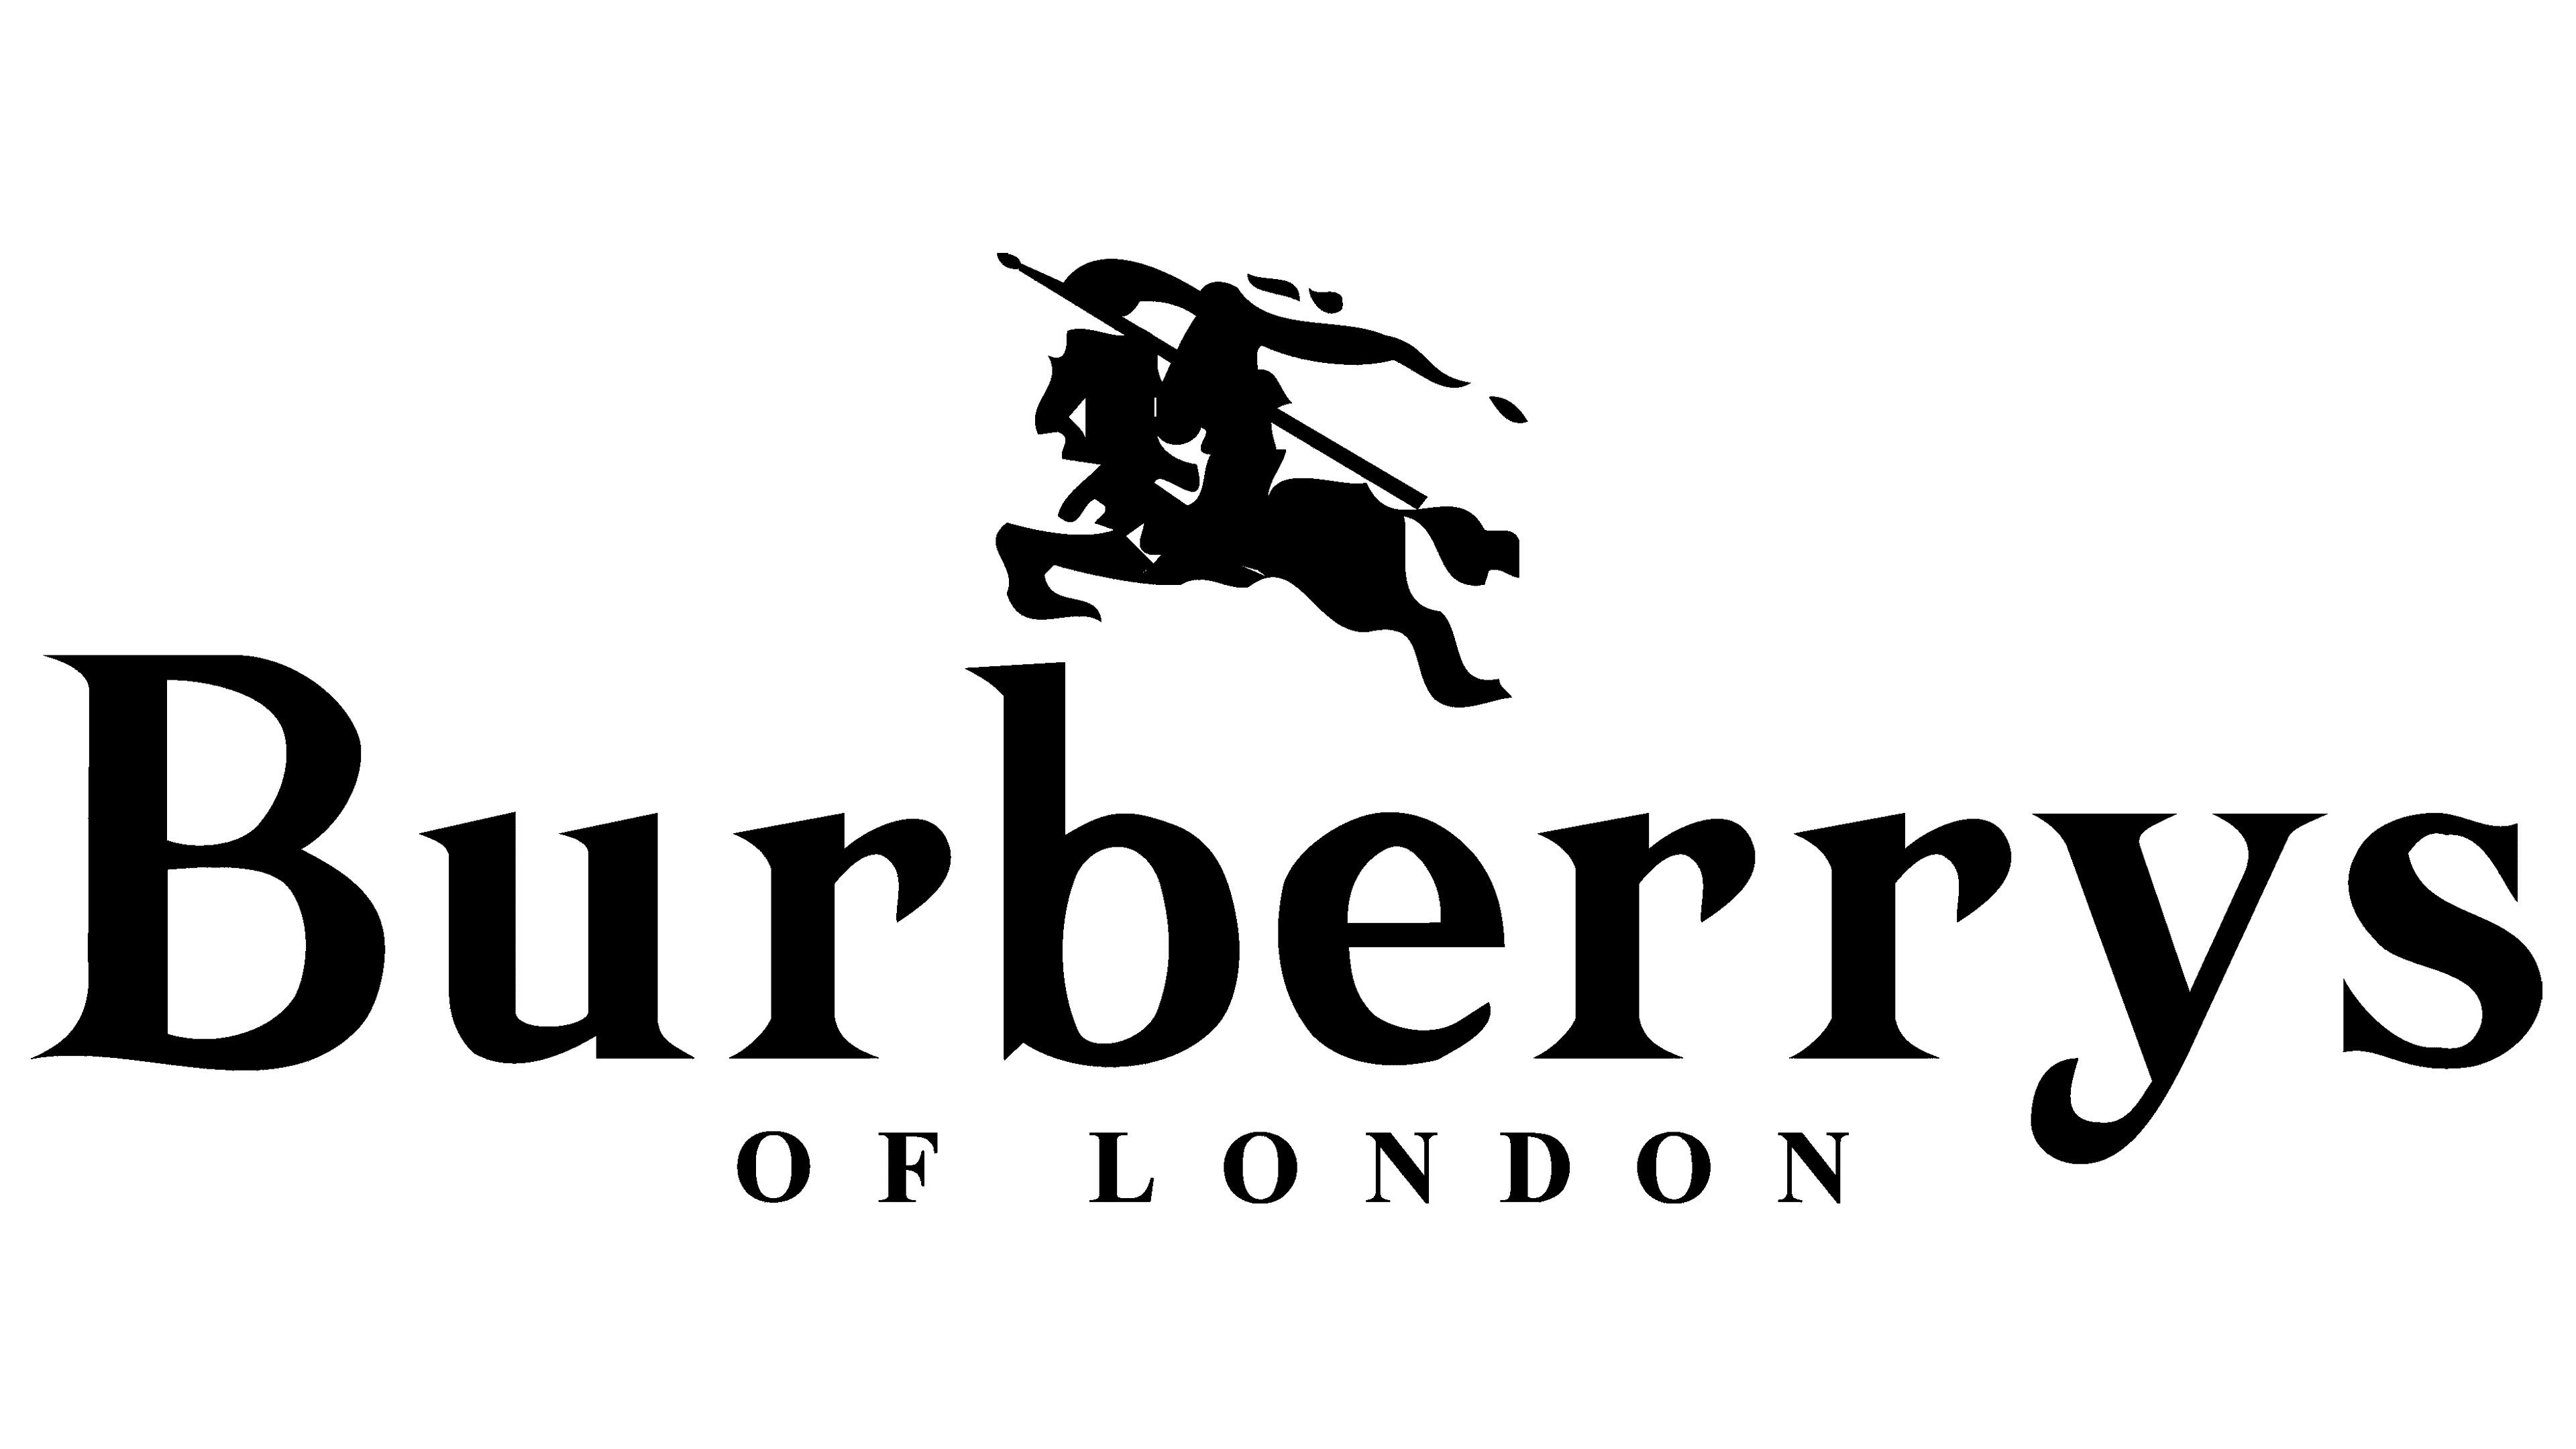 Điểm danh logo of burberry trang phục giúp bạn trở thành tín đồ thời trang